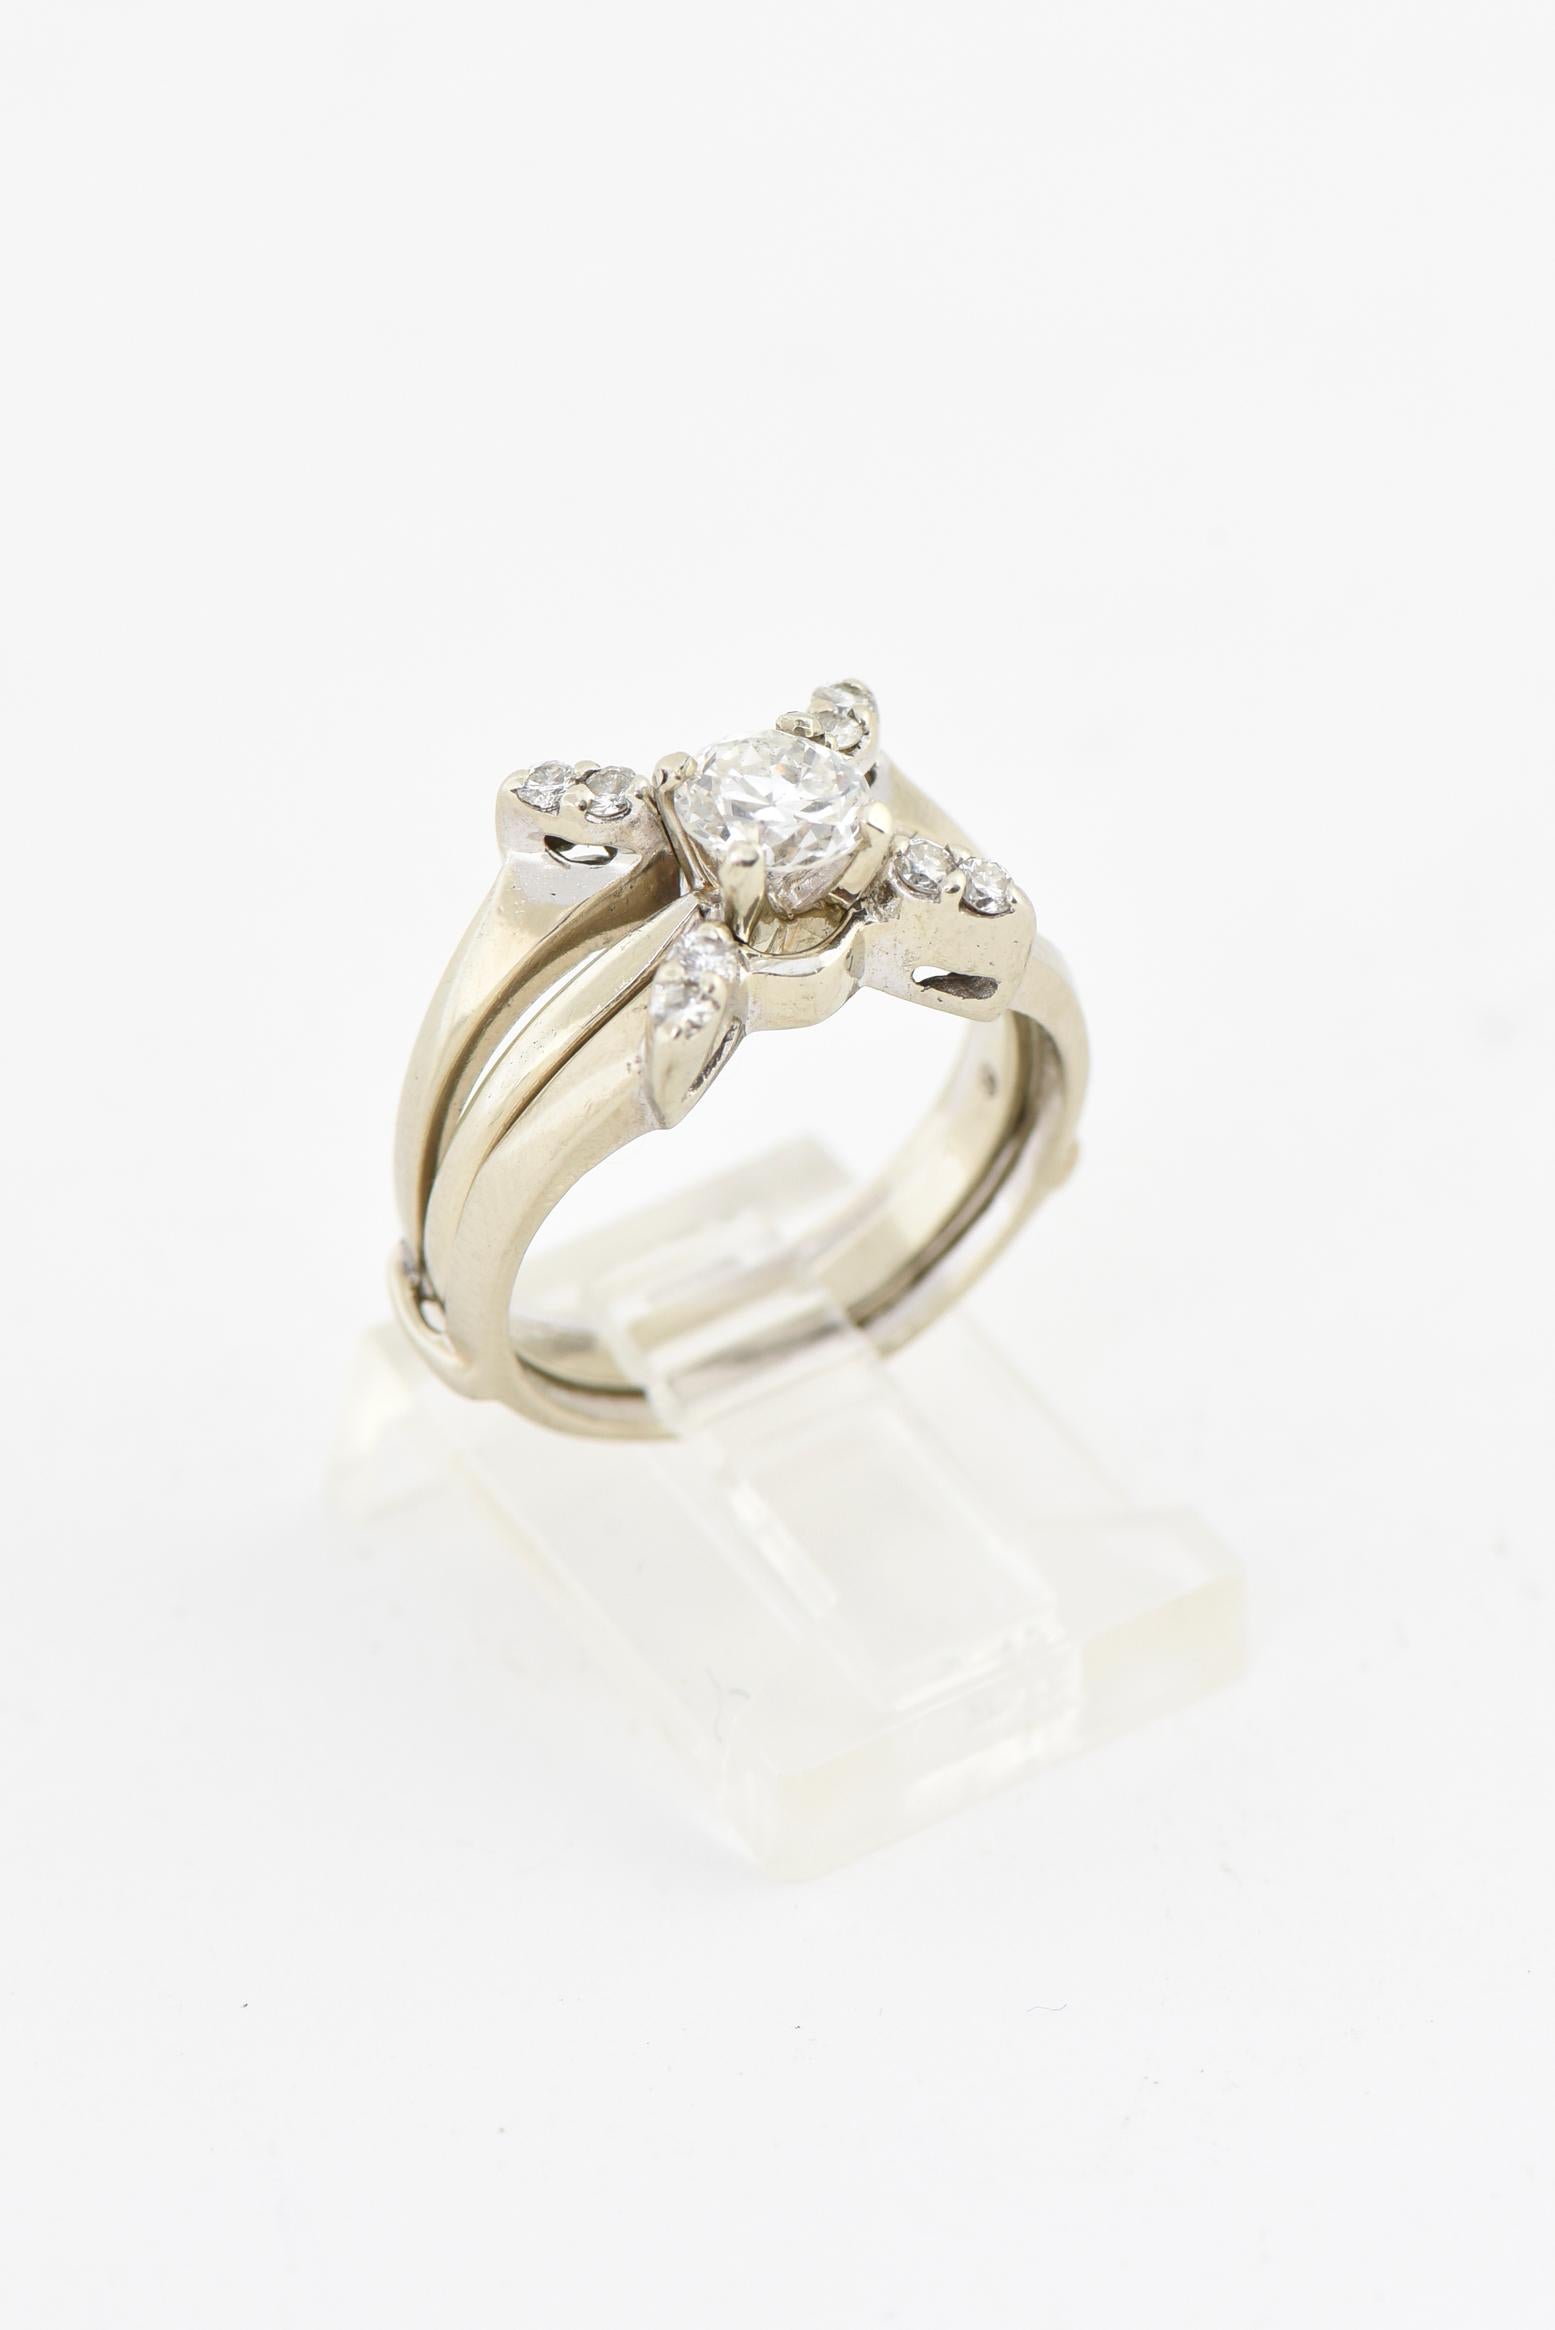 Bague de fiançailles solitaire en diamant avec un diamant central rond de 0,62 carat (poids approximatif) inséré dans un garde diamant en 